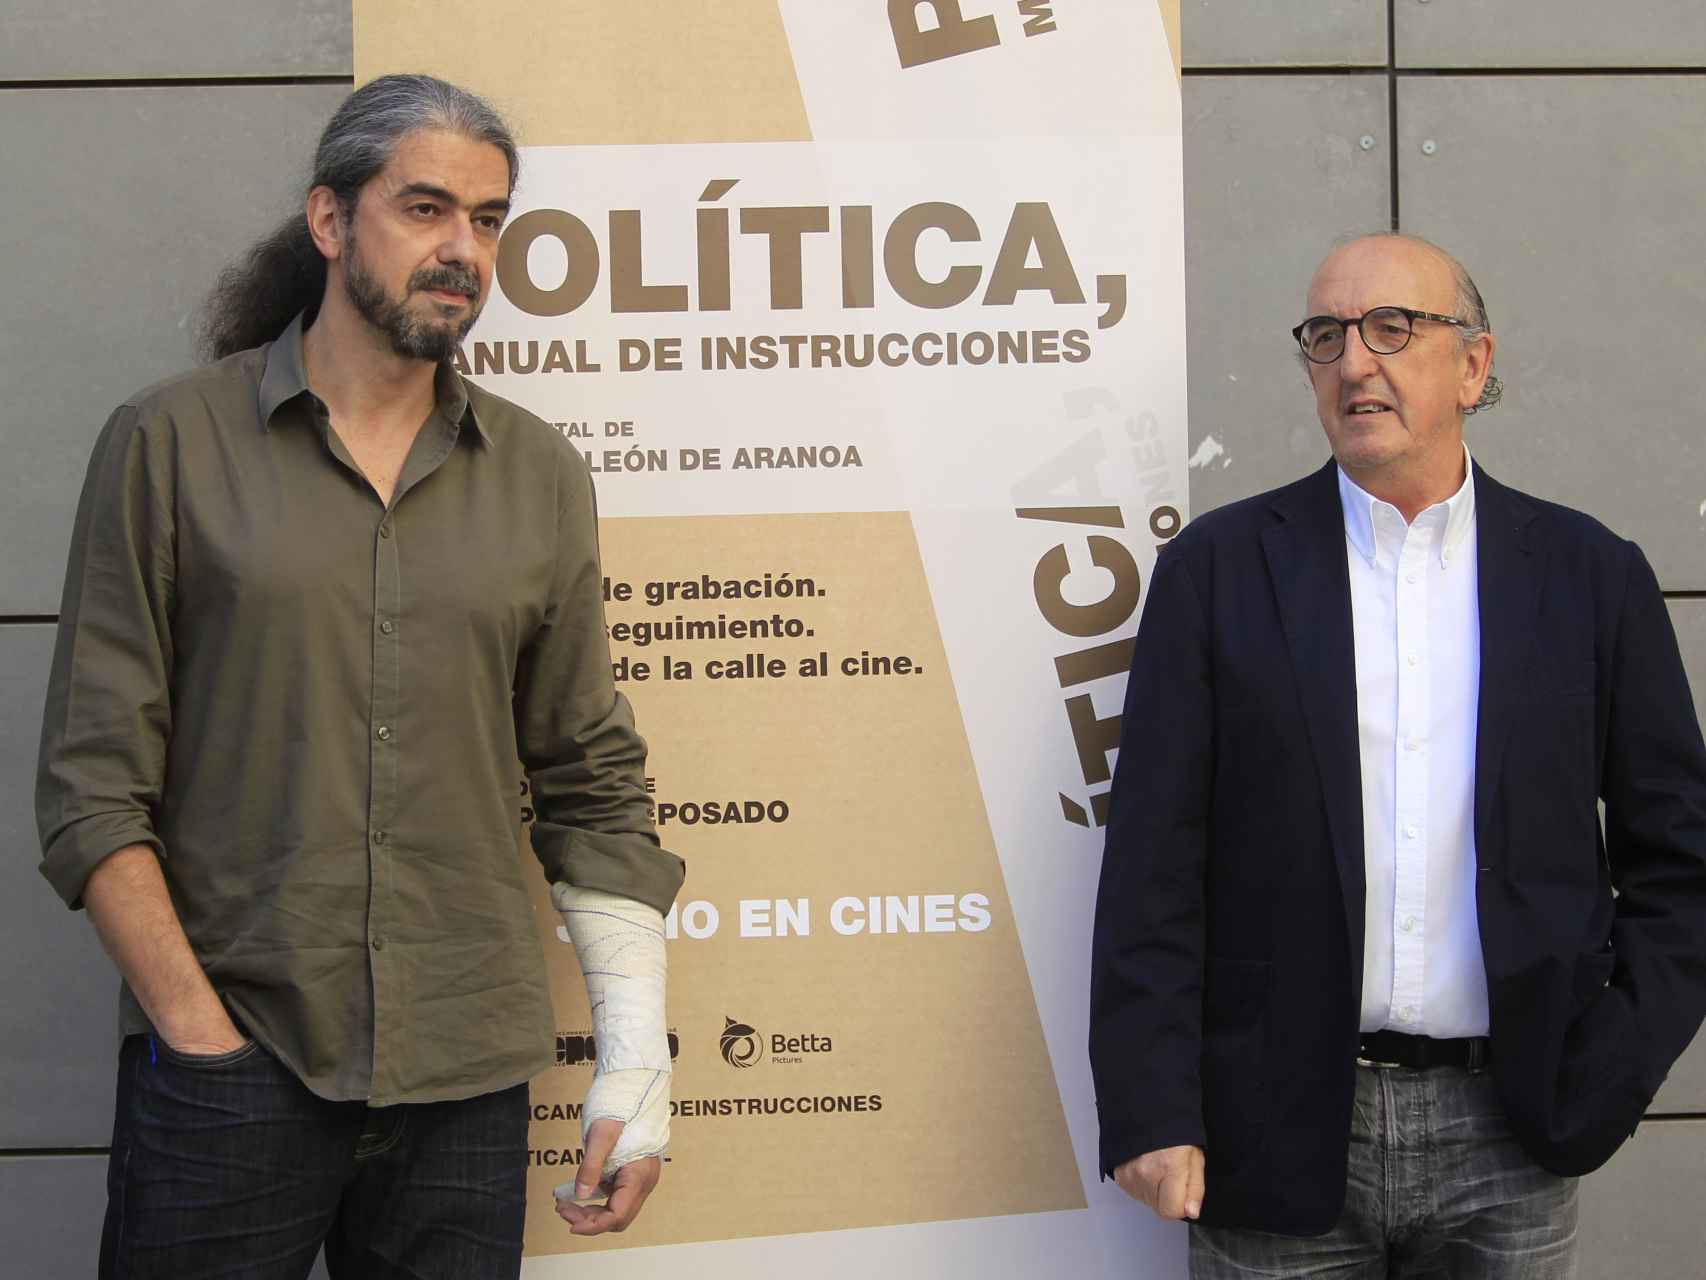 El director y guionista Fernando León de Aranoa y el productor cinematográfico Jaume Roures.